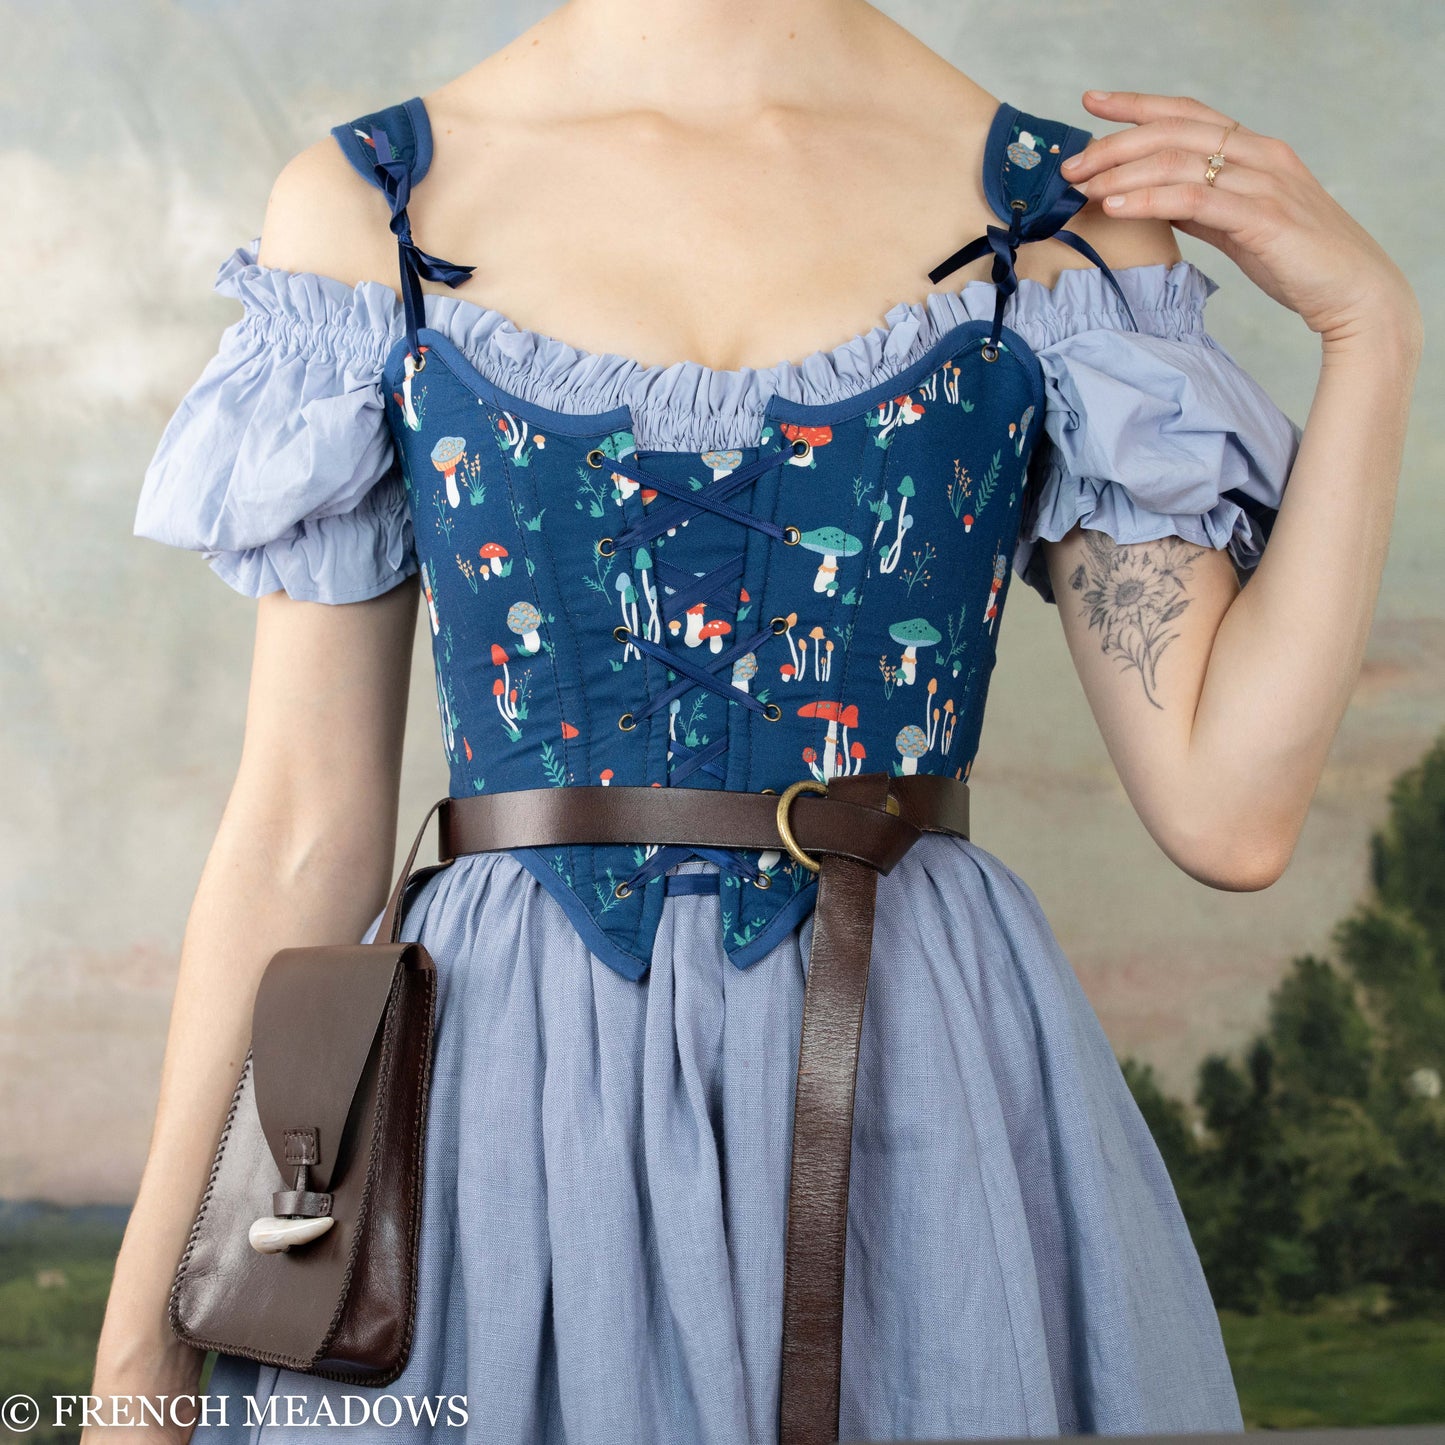 Vintage Style Blue Corset Dress/short Blue Linen Dress / Concept